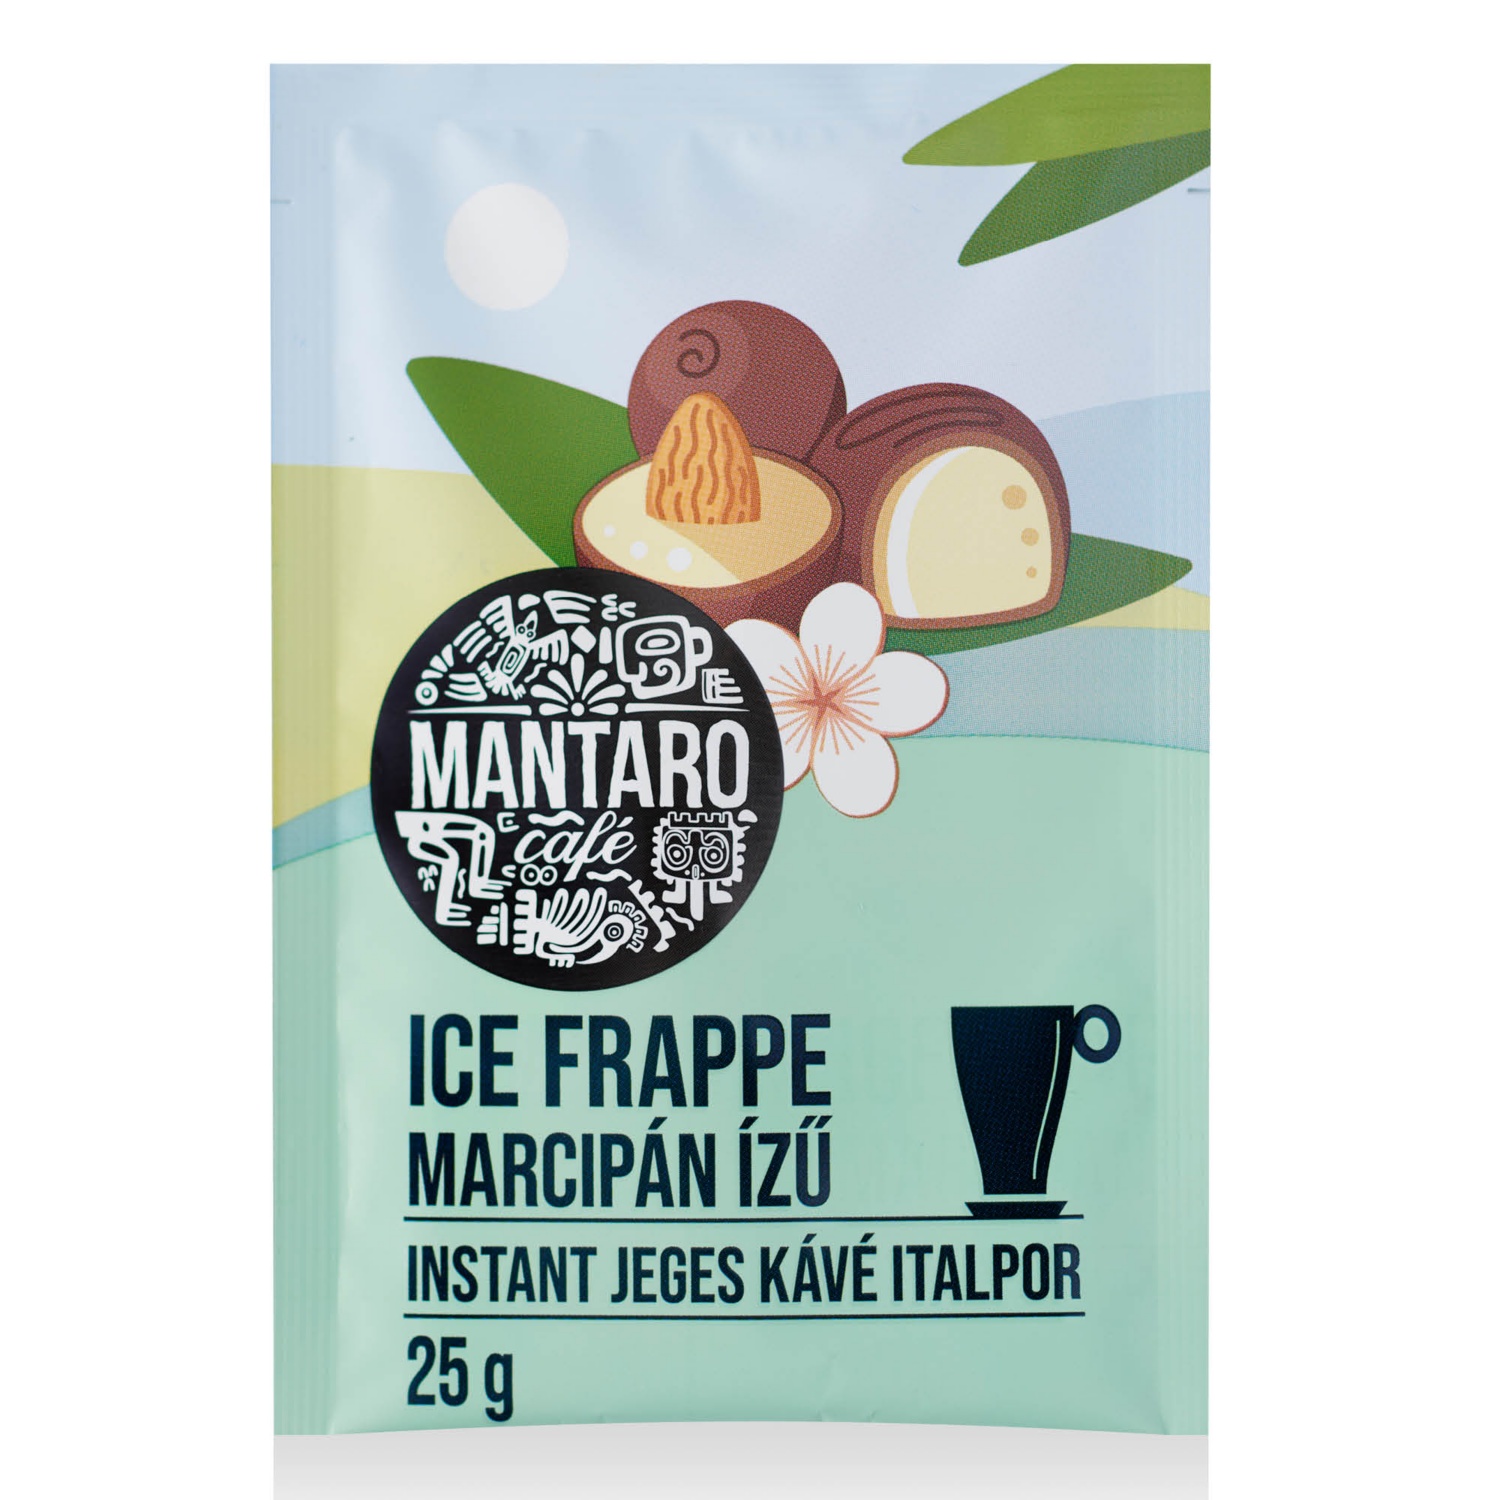 MANTARO CAFÉ Ice frappe, 25 g, marcipánízű